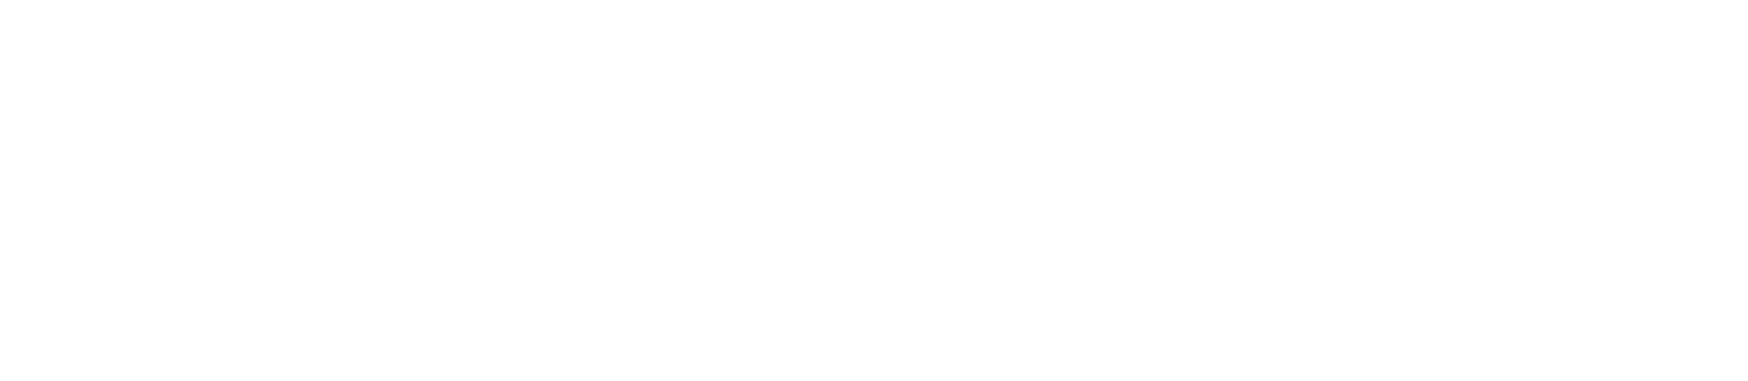 Erasmus beneficaires logo